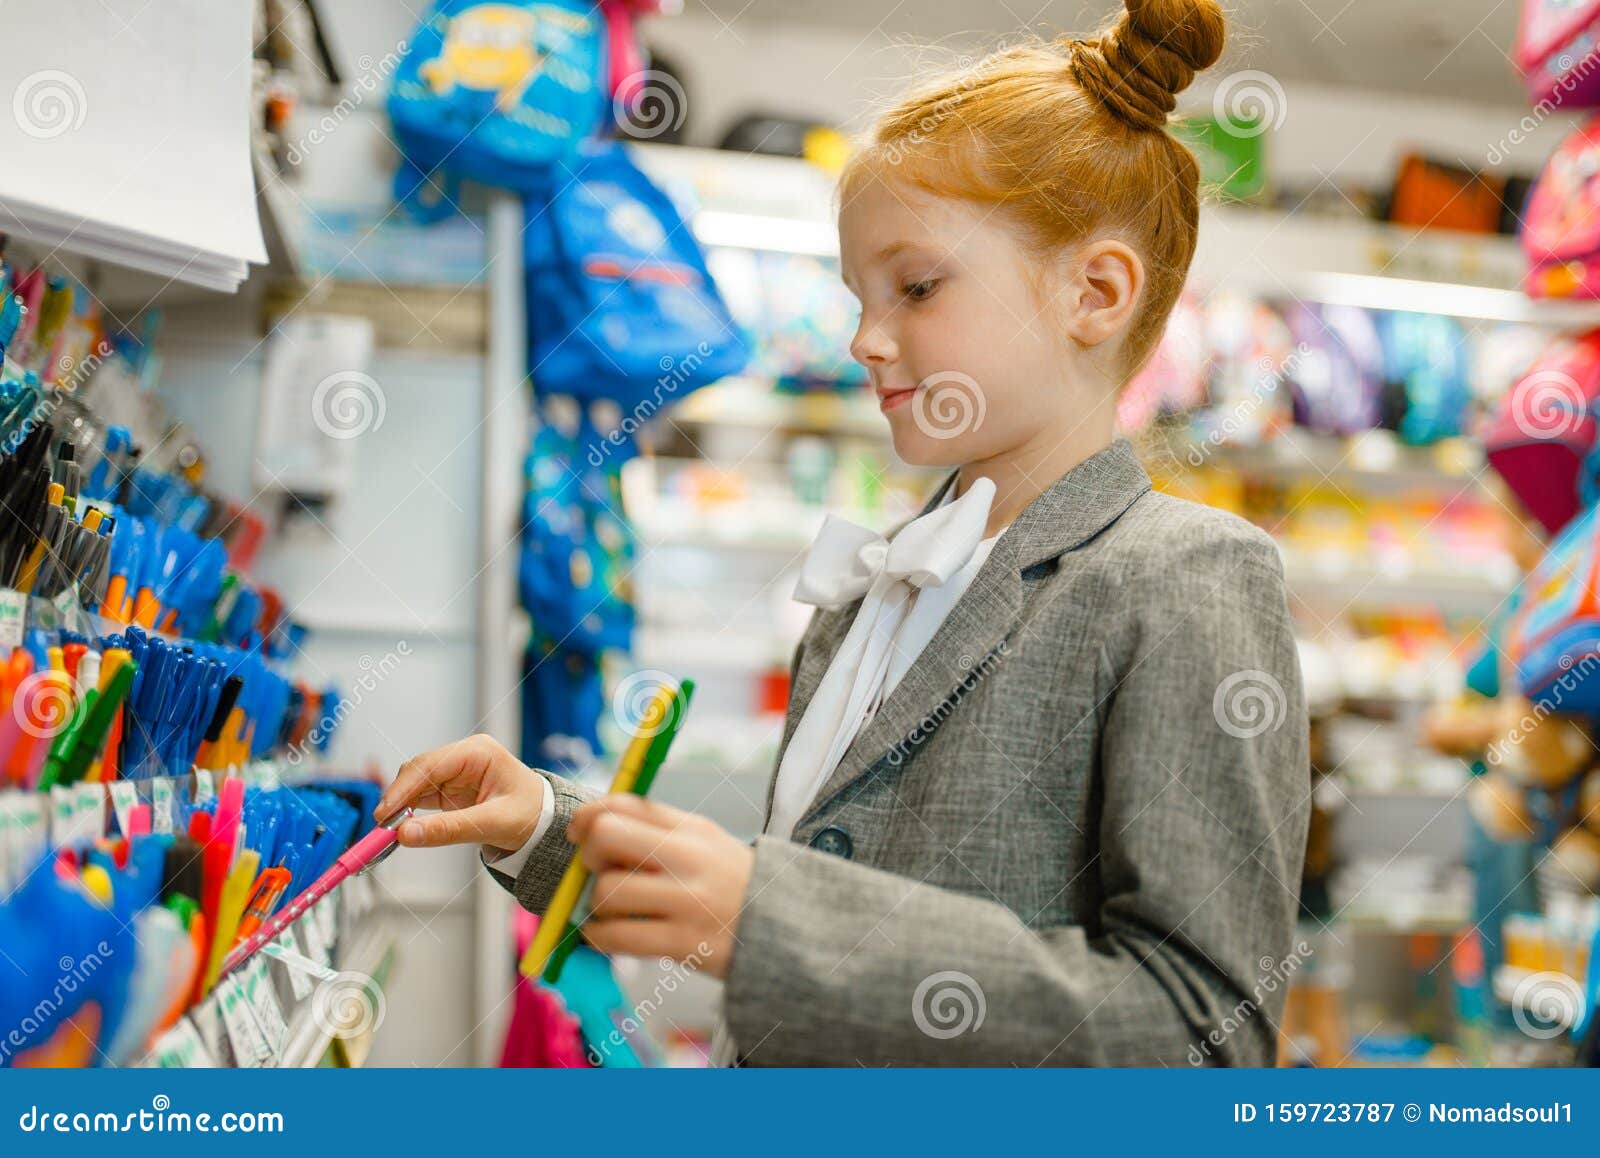 Your school shop. Дети в магазине канцтоваров. Канцелярия для детей. Ребенок в магазине. Магазин канцелярии для детей.